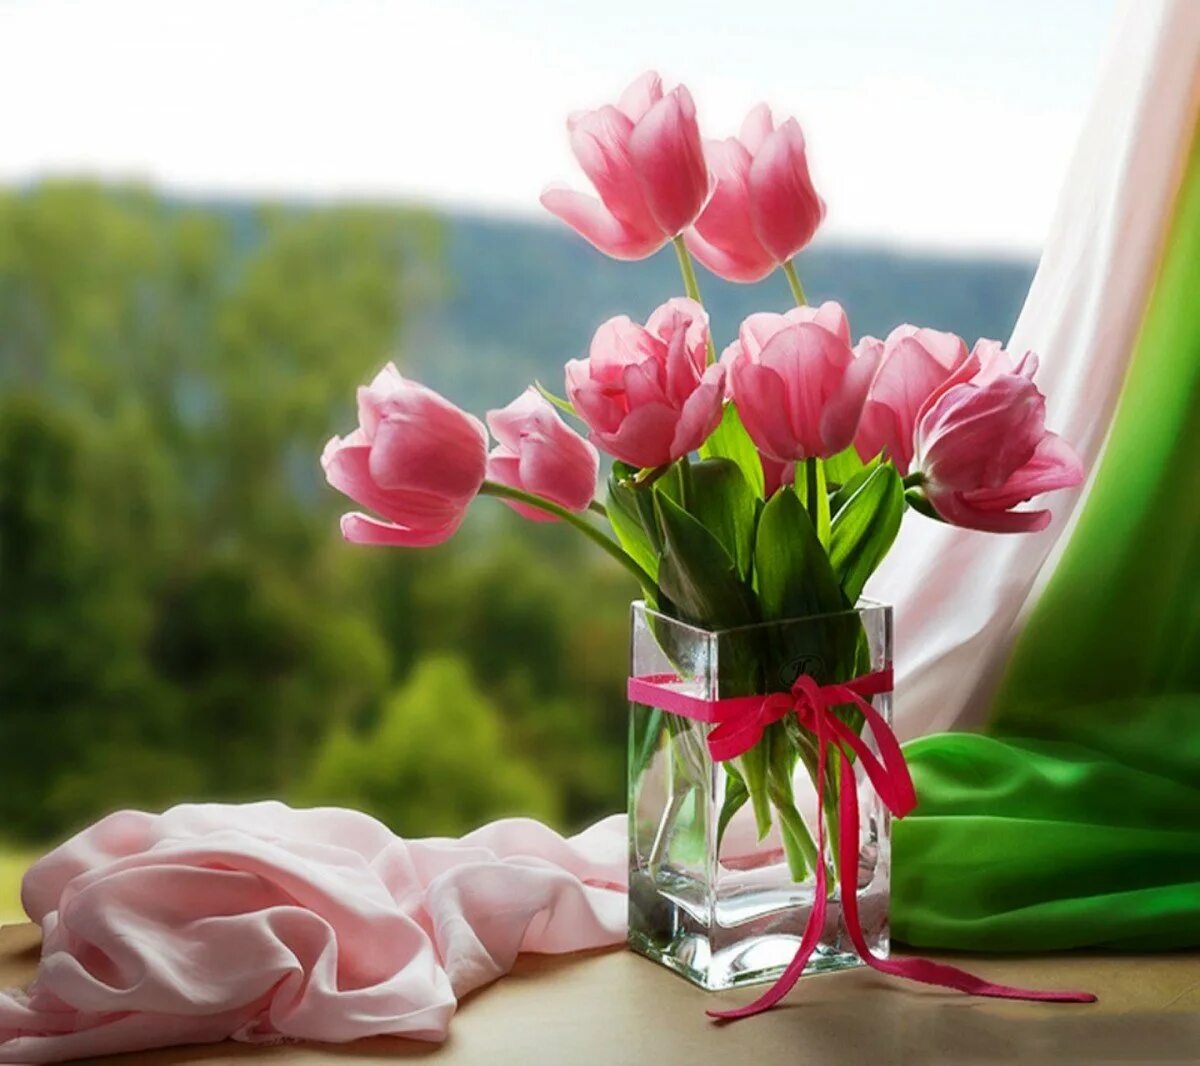 Тюльпаны в вазе. Нежные тюльпаны. Букет тюльпанов в вазе. Красивые тюльпаны в вазе. Весенний букет цветов утром